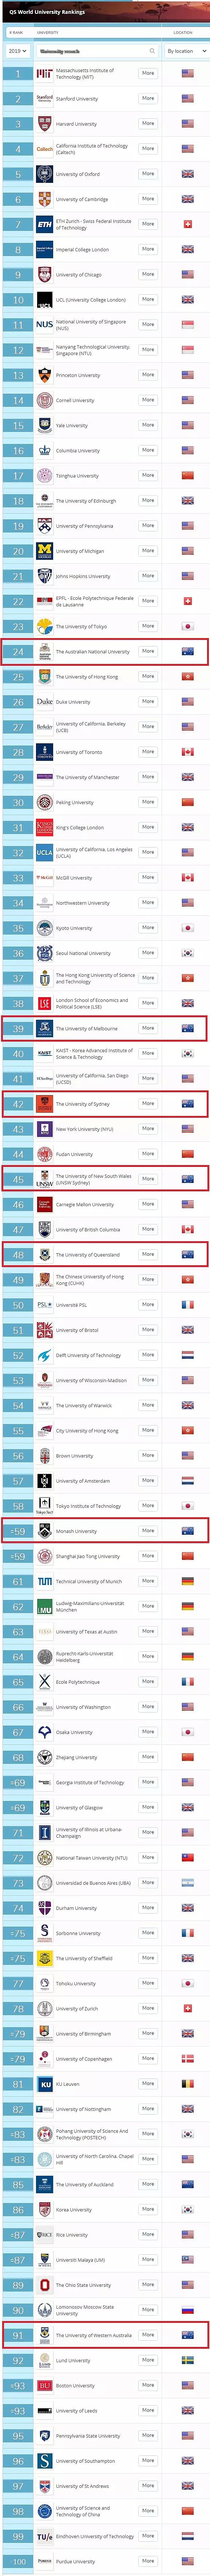 重磅首发！2019版QS世界大学排名榜放出！ANU全澳居首，37所澳大学上榜创纪录！ - 11